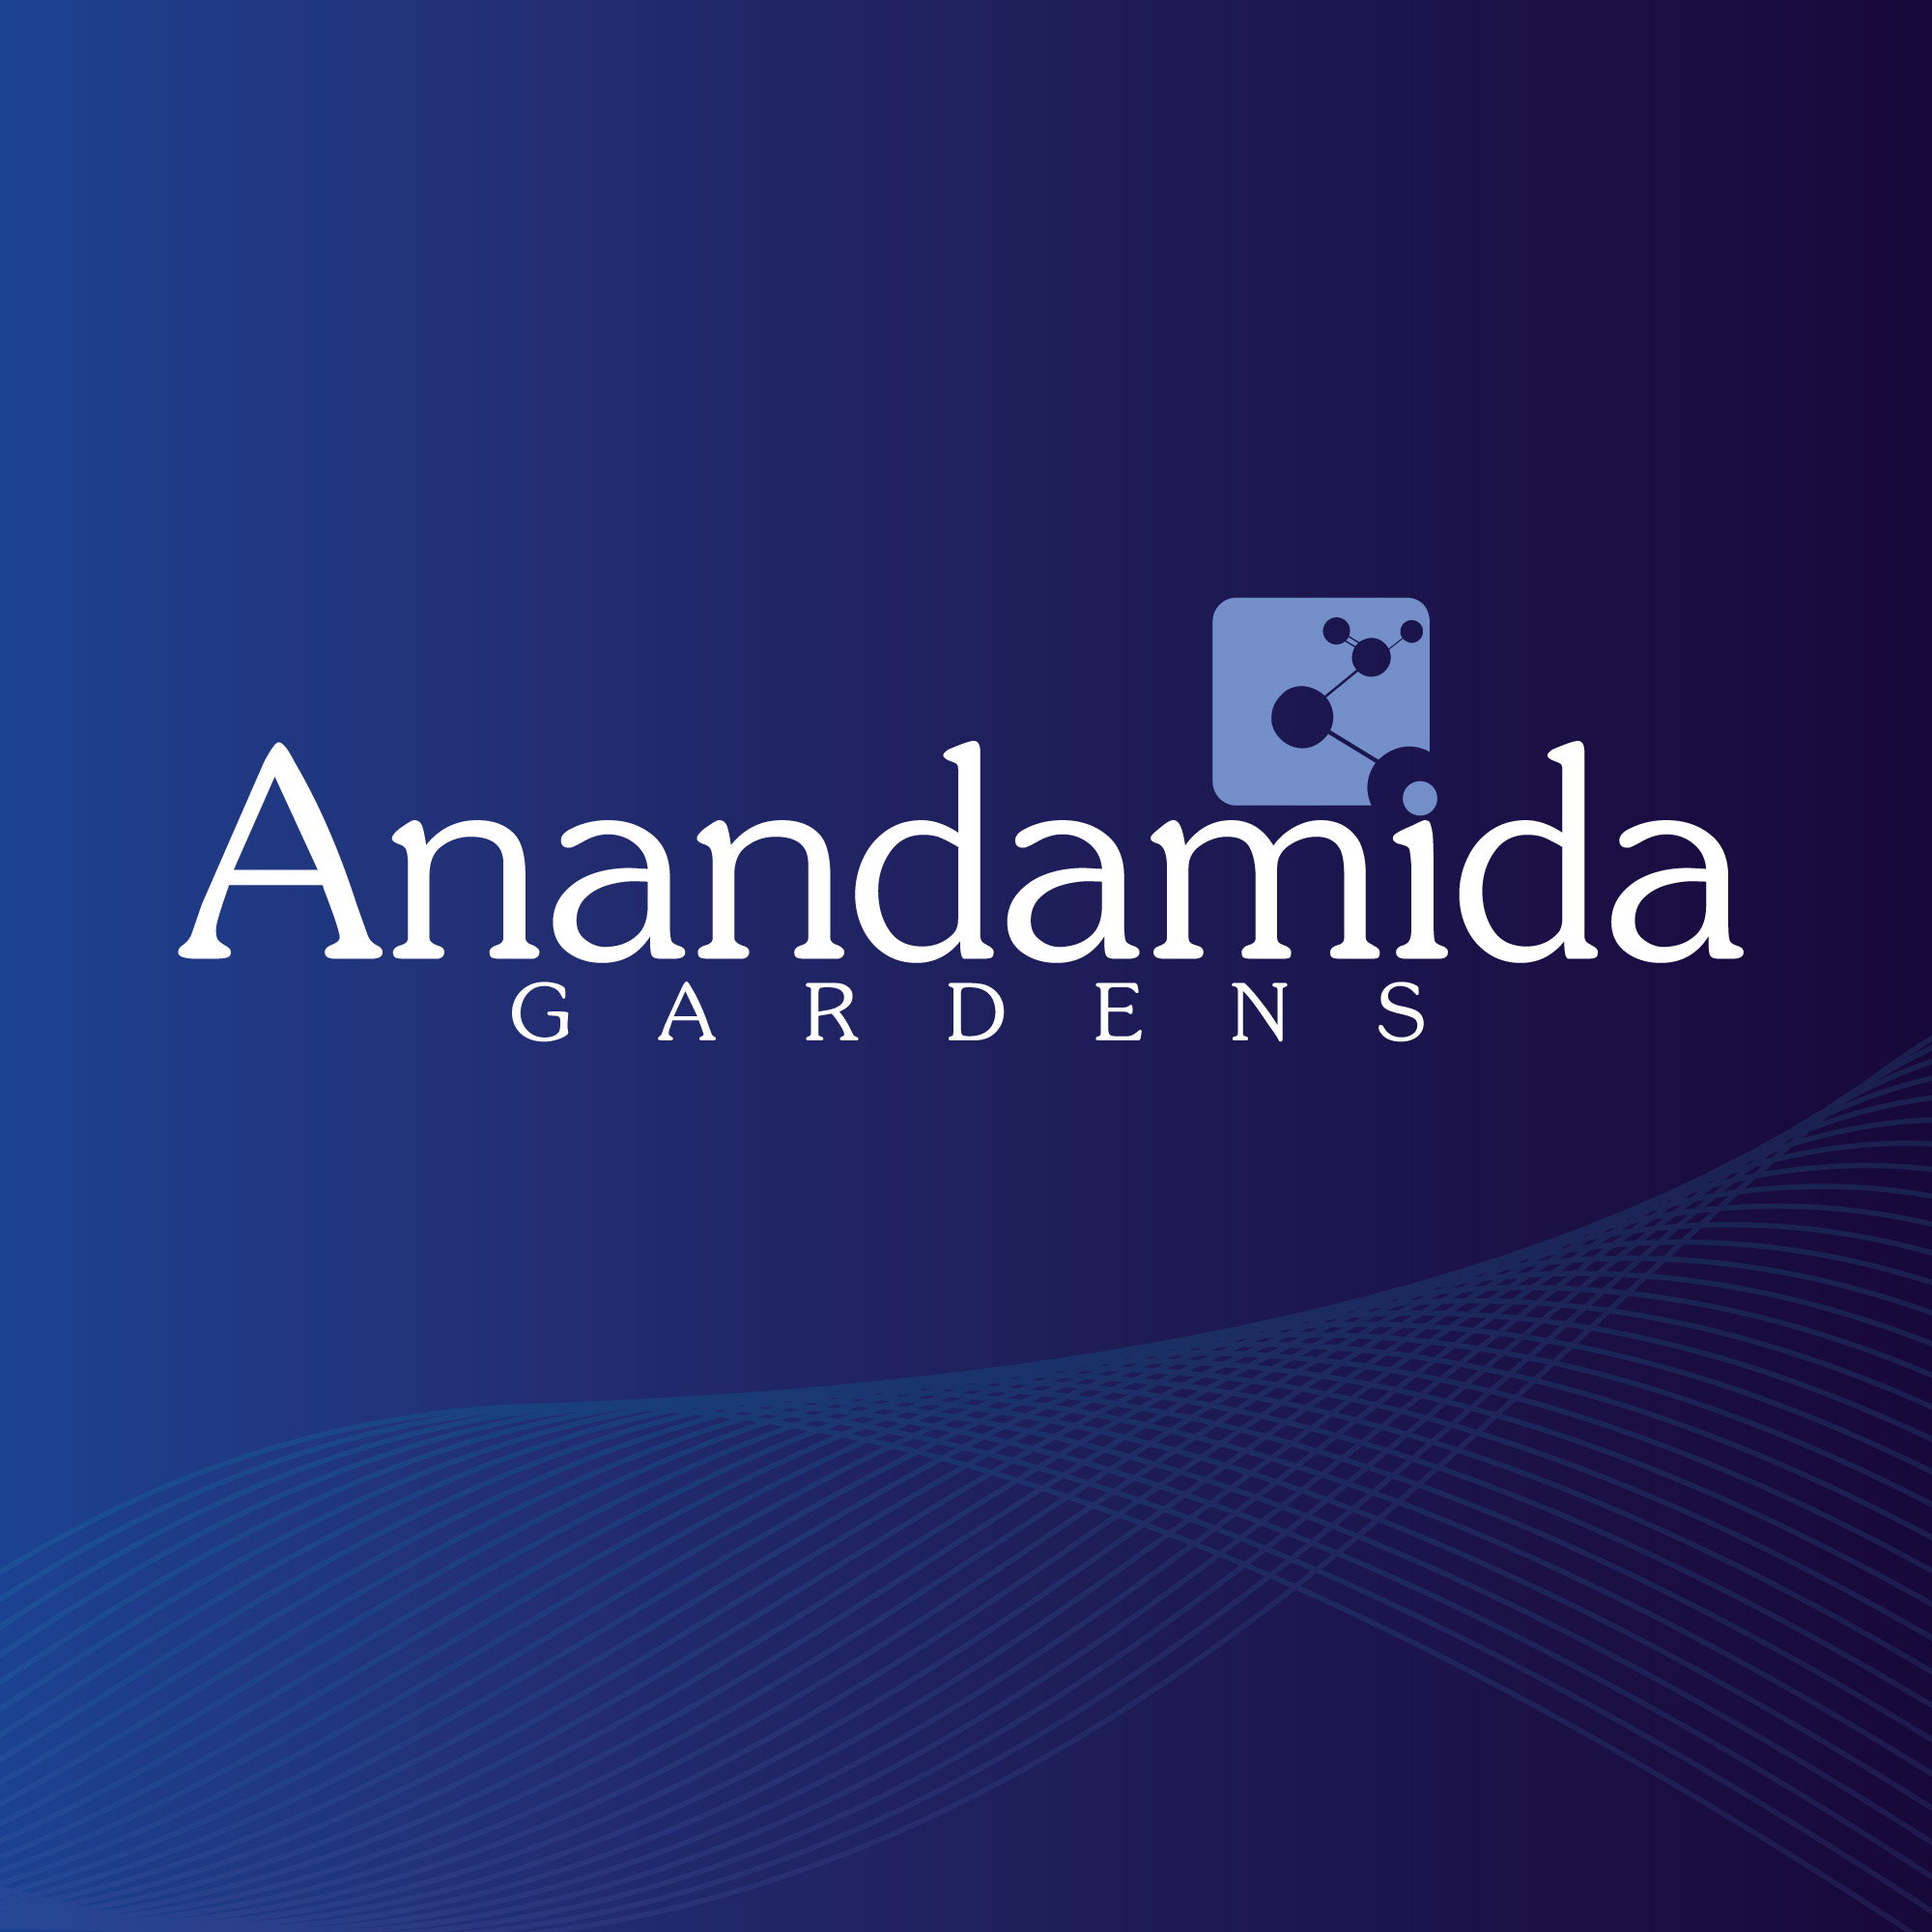 Anandamida Gardens - La Anandamida es la molécula de la felicidad. #ciencia  #cannabismedicinal #THC #CBD